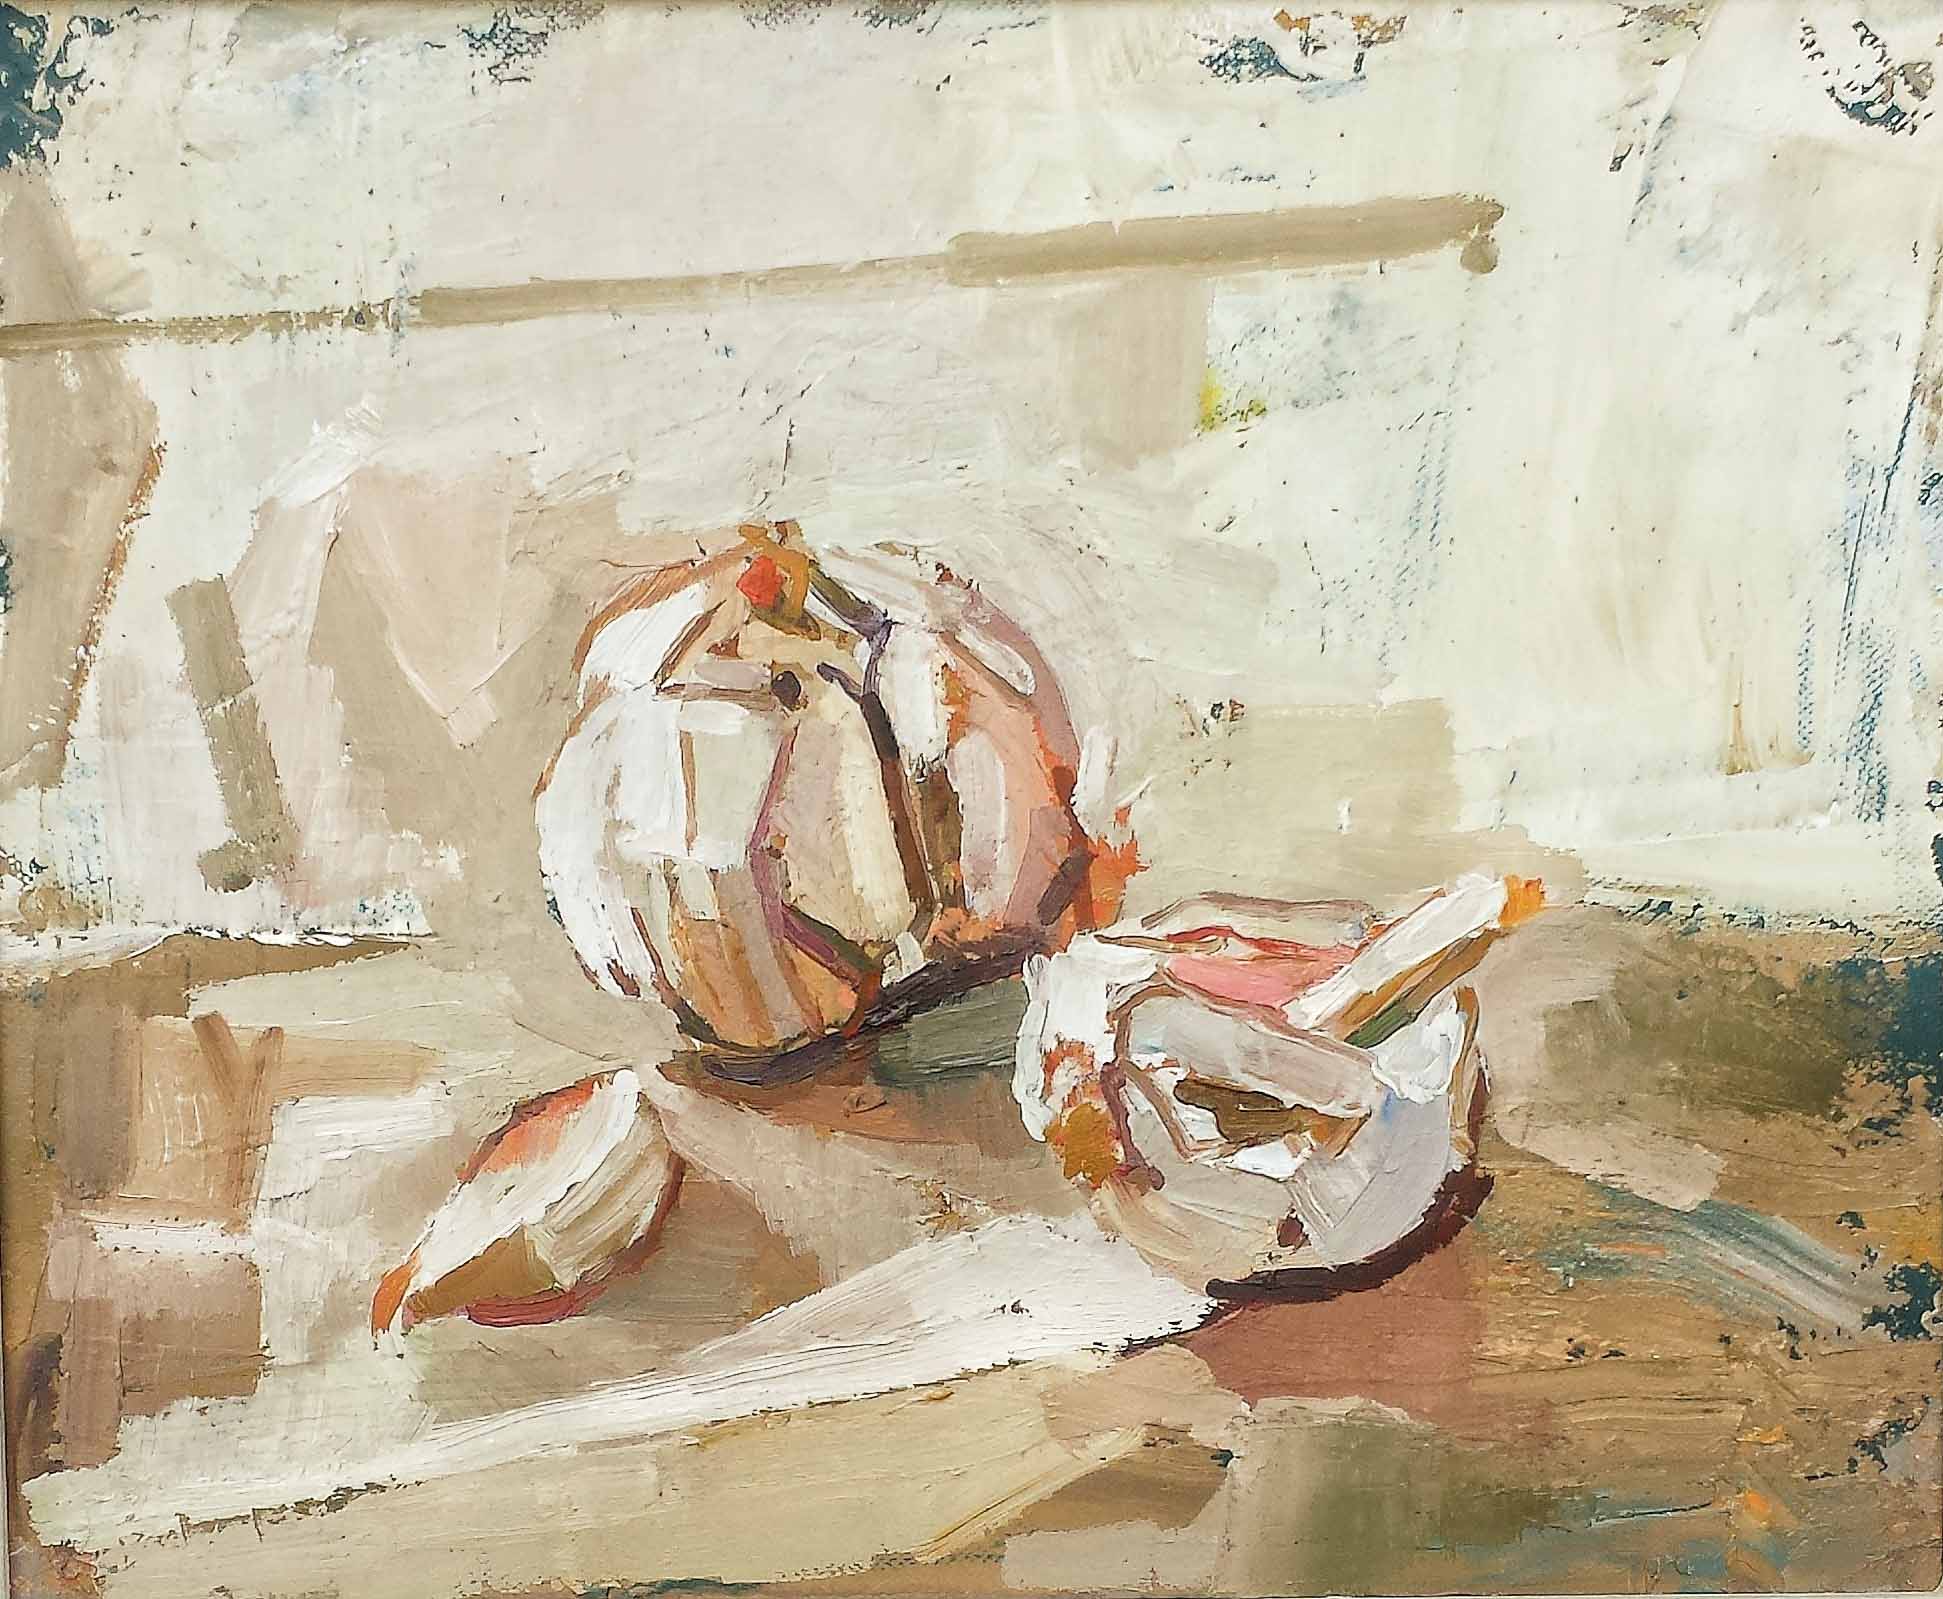 30 x 25 cm Garlic, Oil on Canvas